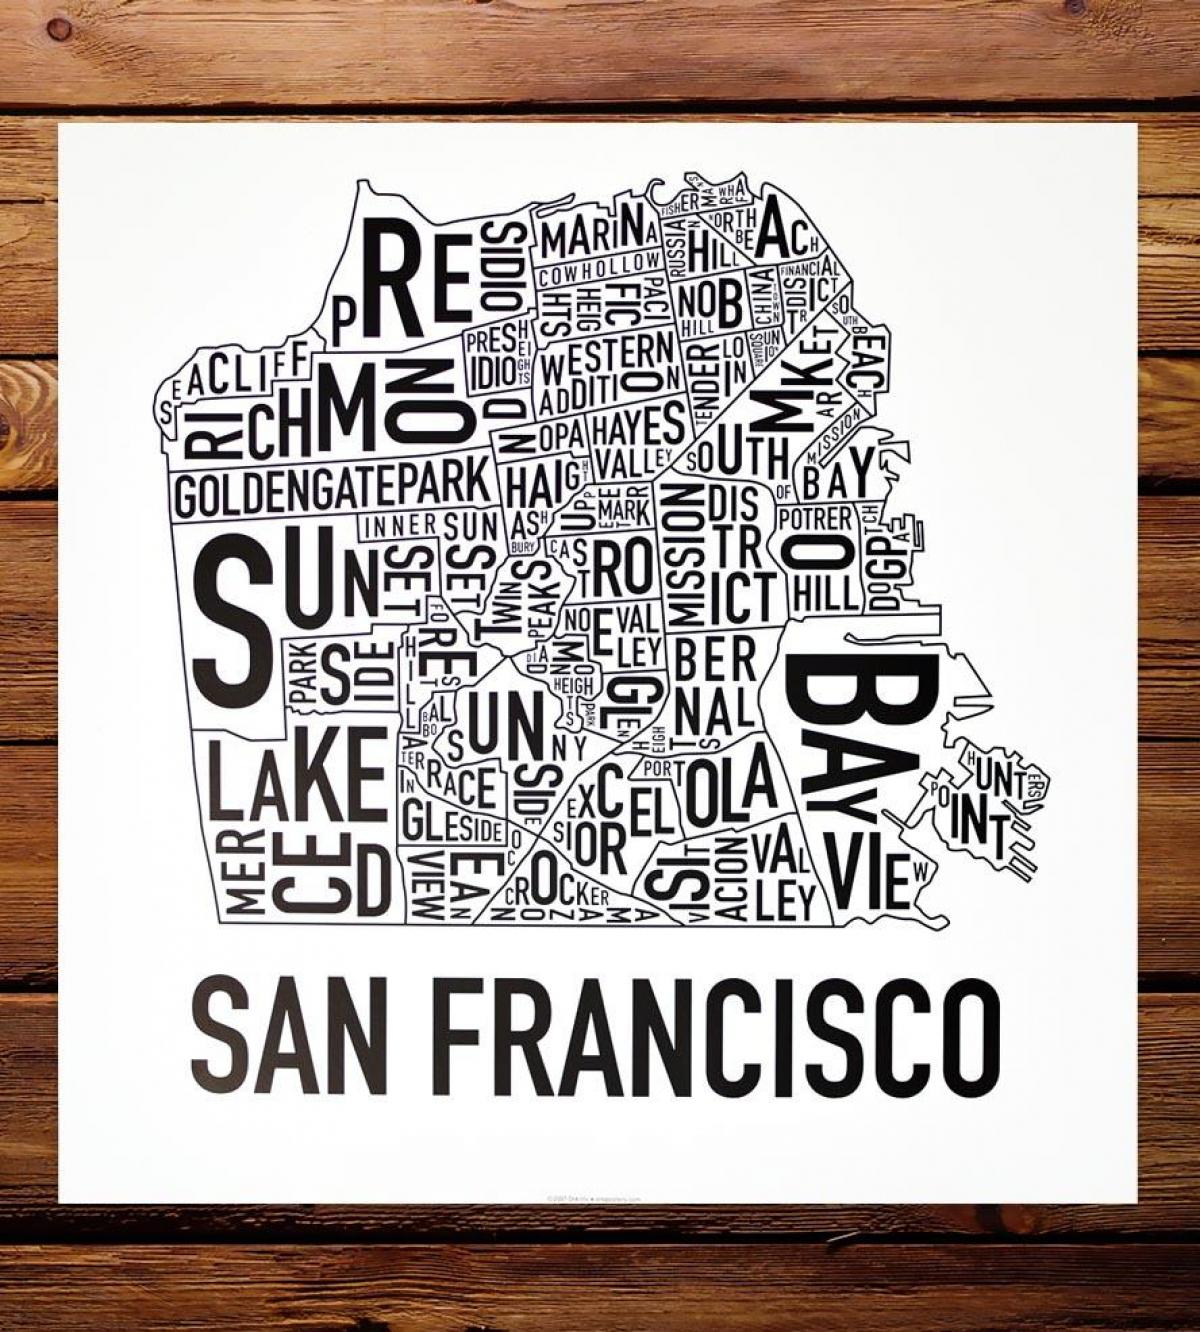 Քարտեզ Սան Ֆրանցիսկոյում եւ շրջապատը արվեստի